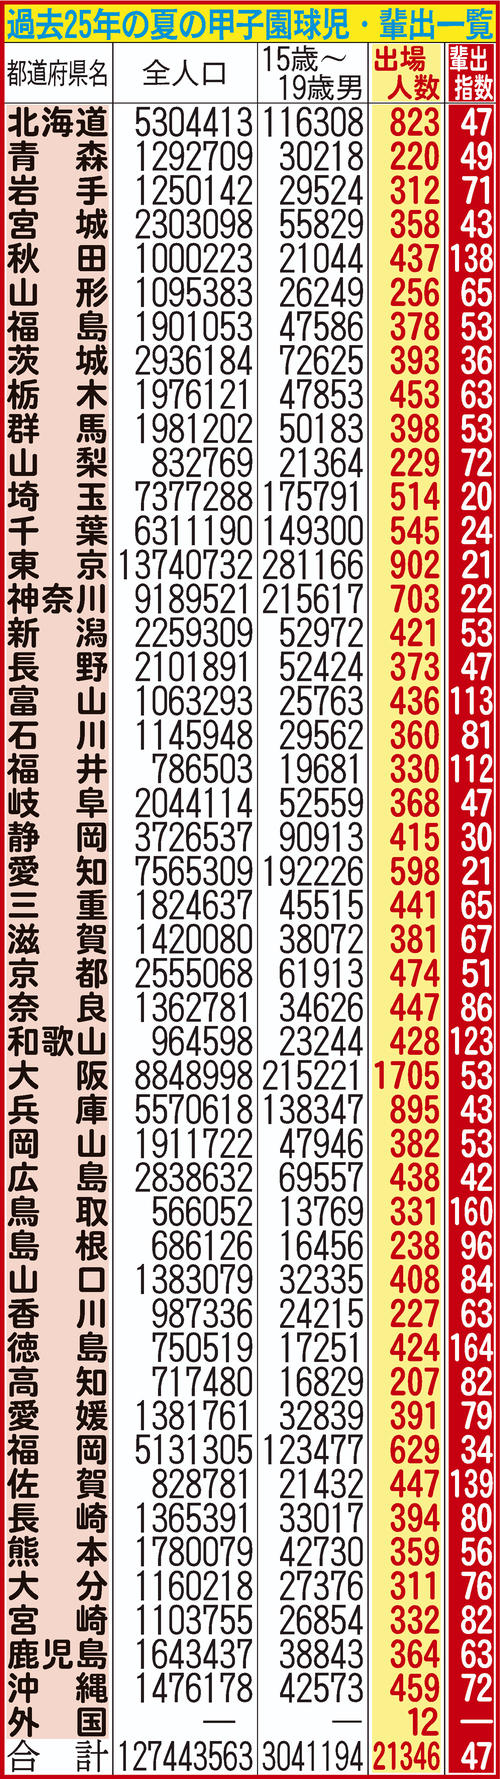 過去25年間における都道府県別の甲子園輩出指数